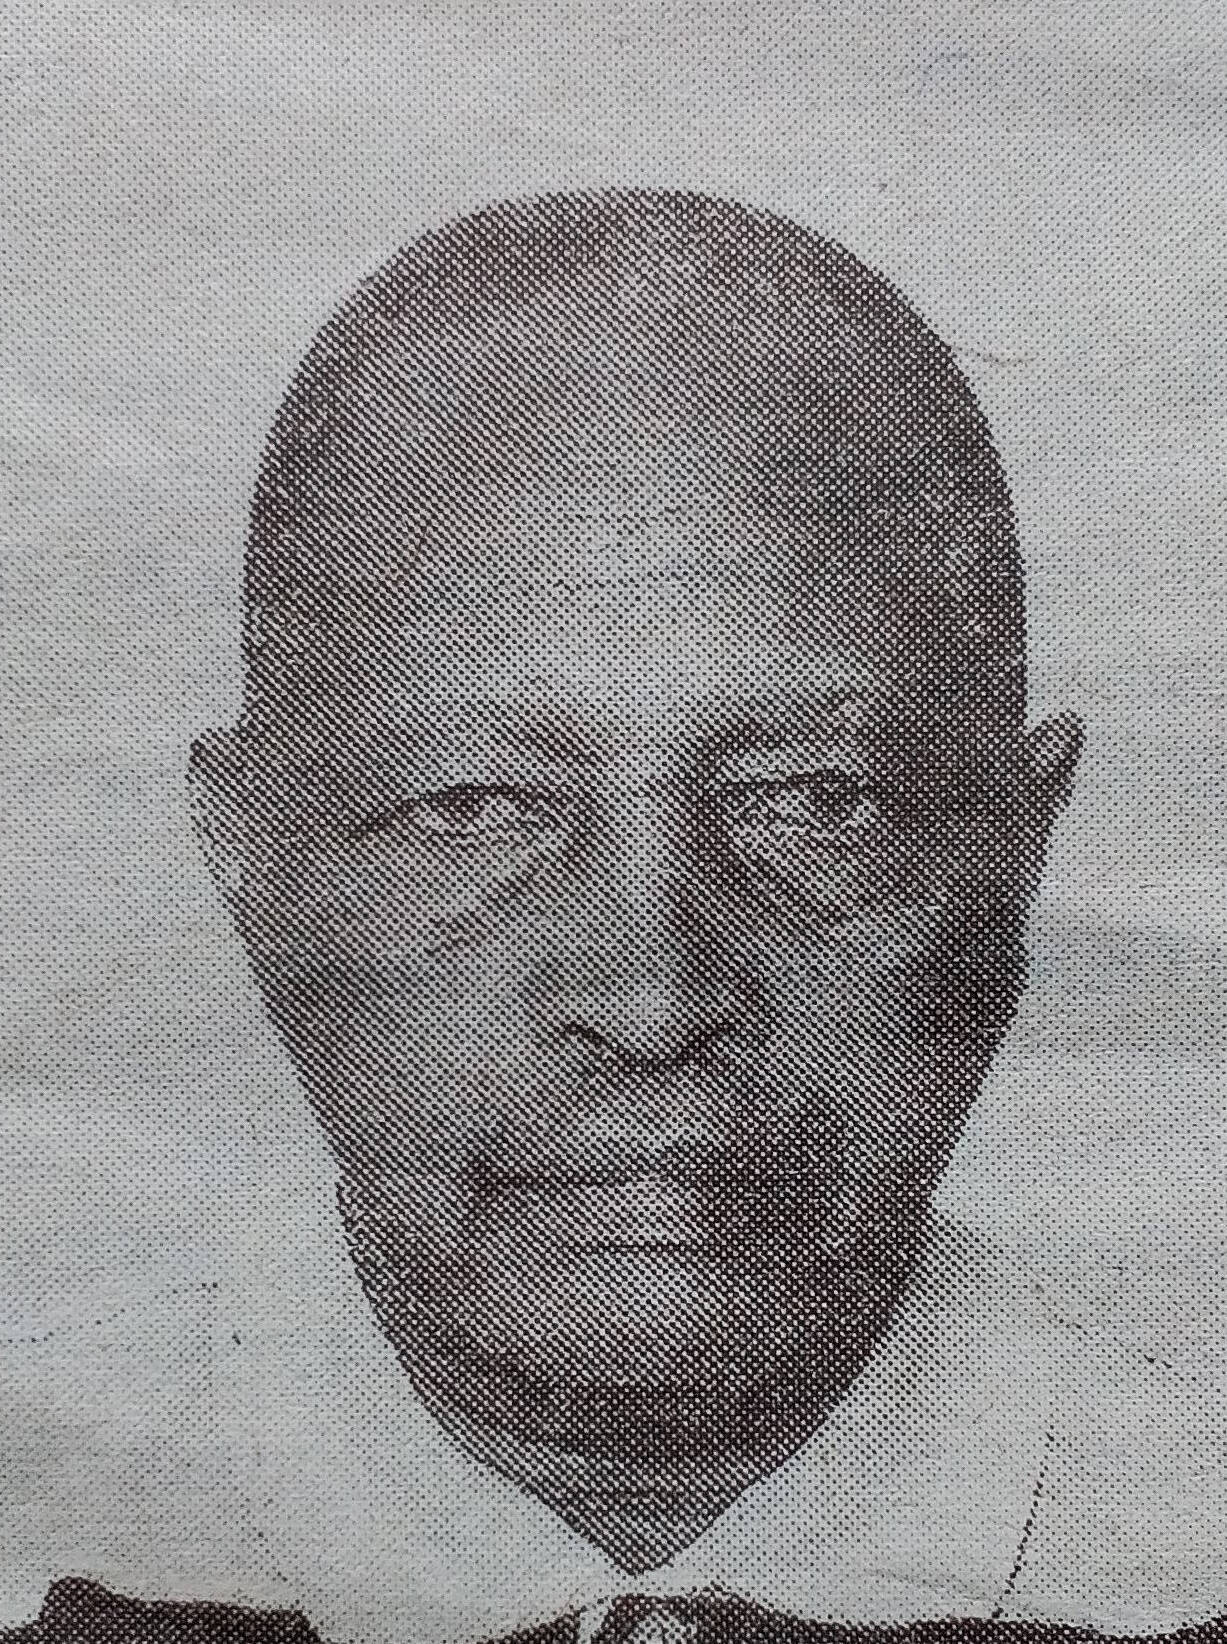 Obituary Image of Wilfred Chemobo Chepkurgat Sunrise 1940 Sunset 26/03/2017